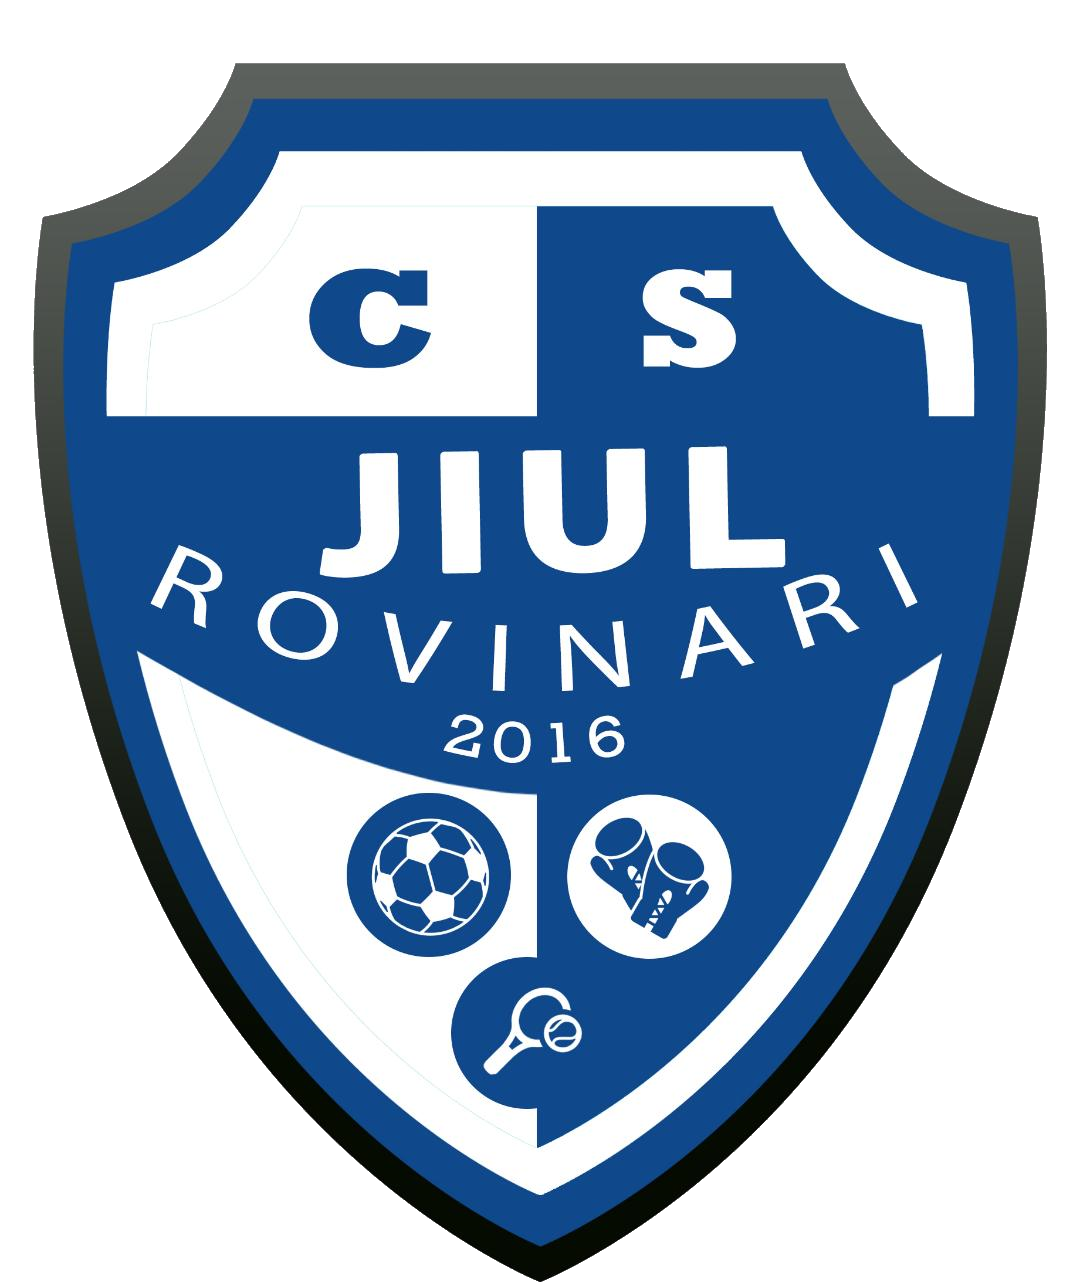 Wappen CS Jiul Rovinari 2016